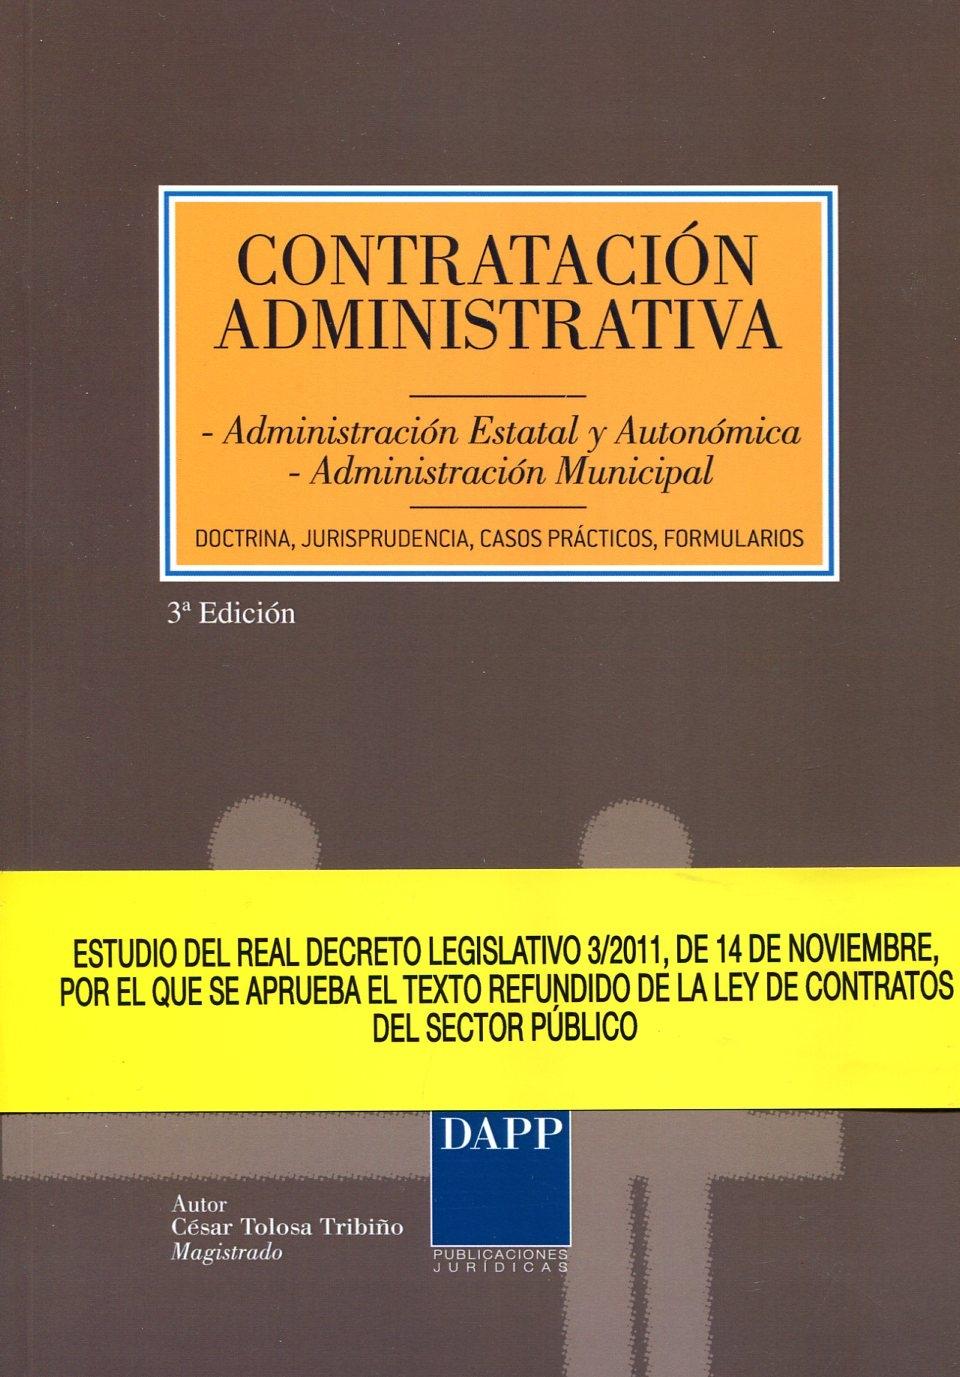 Contratación Administrativa "Administración estatal y autonómica. Administración municipal"